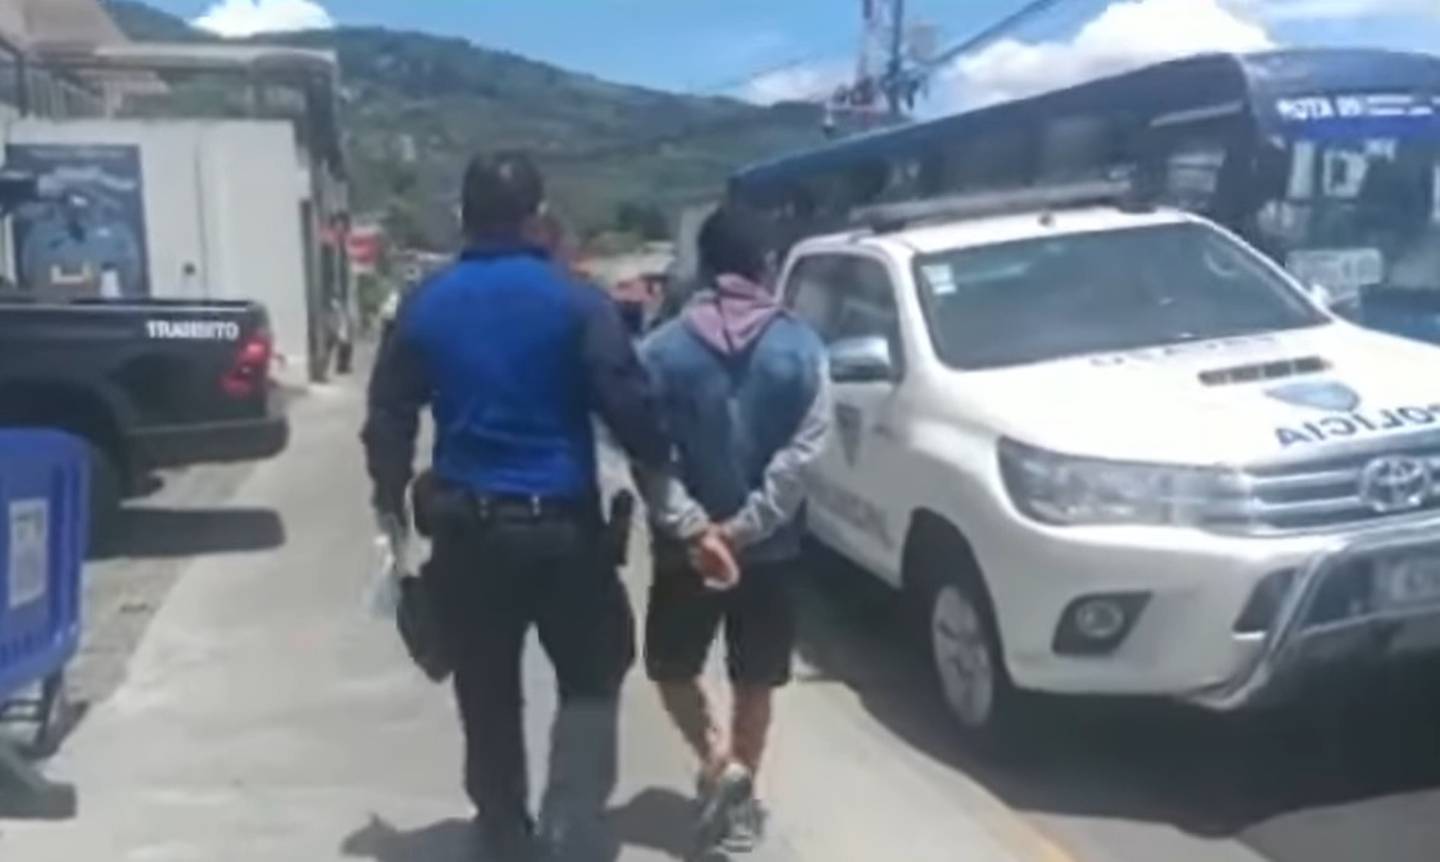 Policía Municipal de Escazú detiene dos veces en un mismo día a un sujeto por robos. Foto Policía Municipal Escazú.